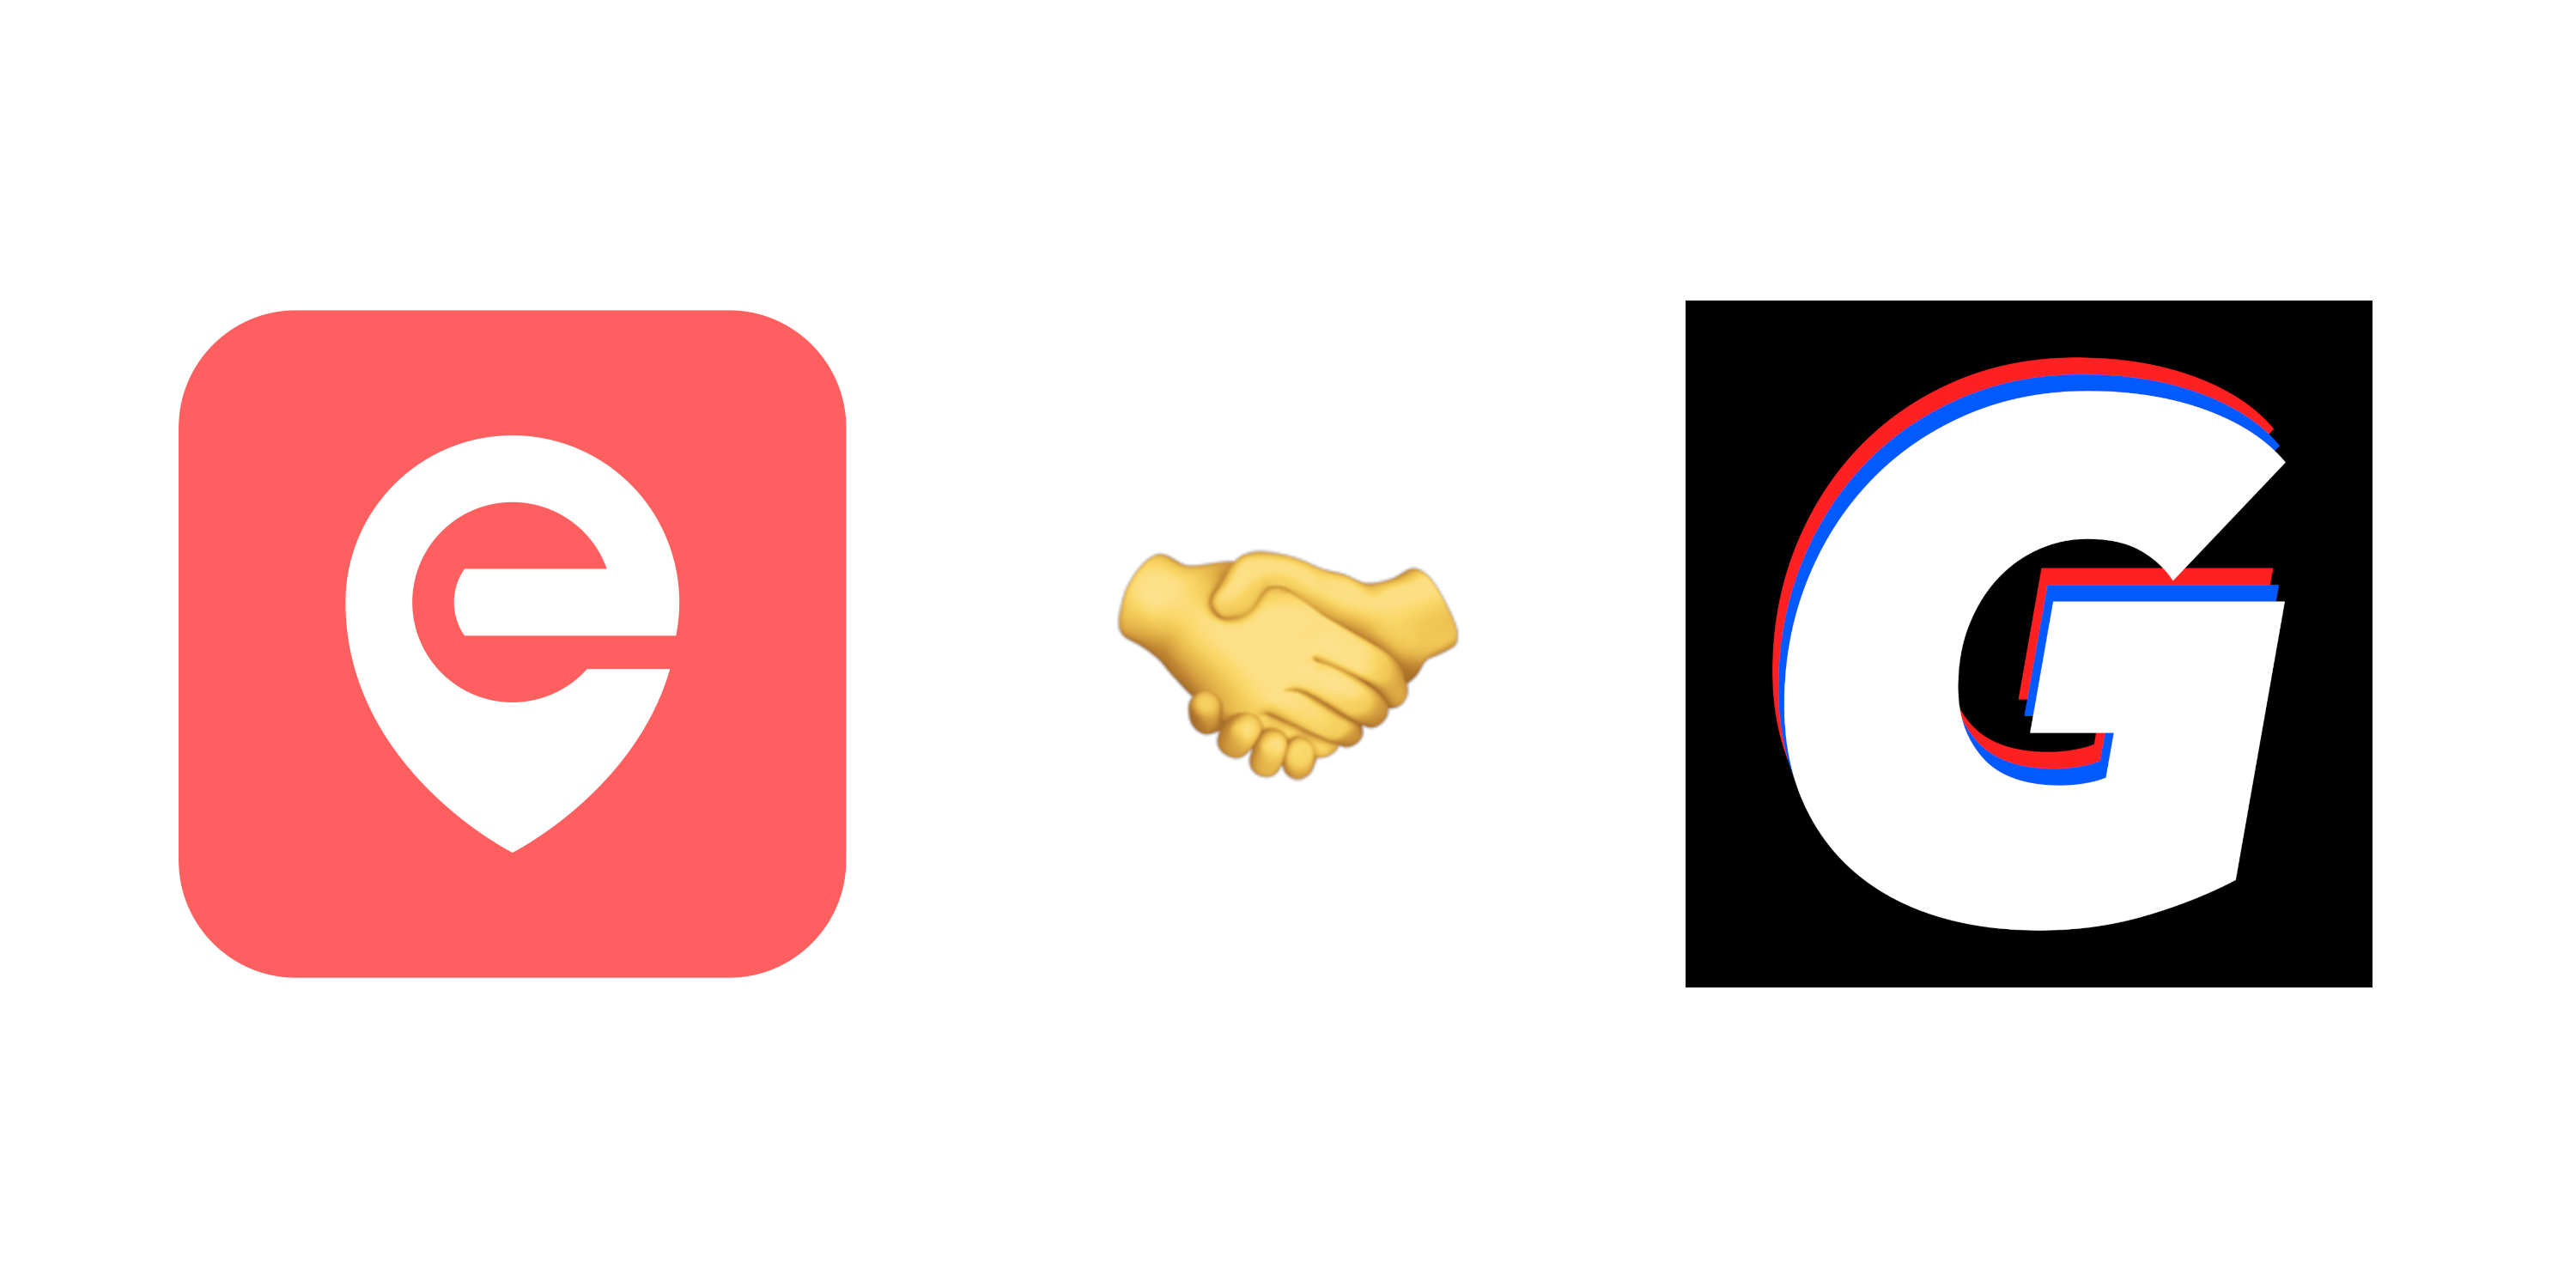 Die Logos von Eddress und Gorillas, dazwischen das Händeschüttel-Emoji